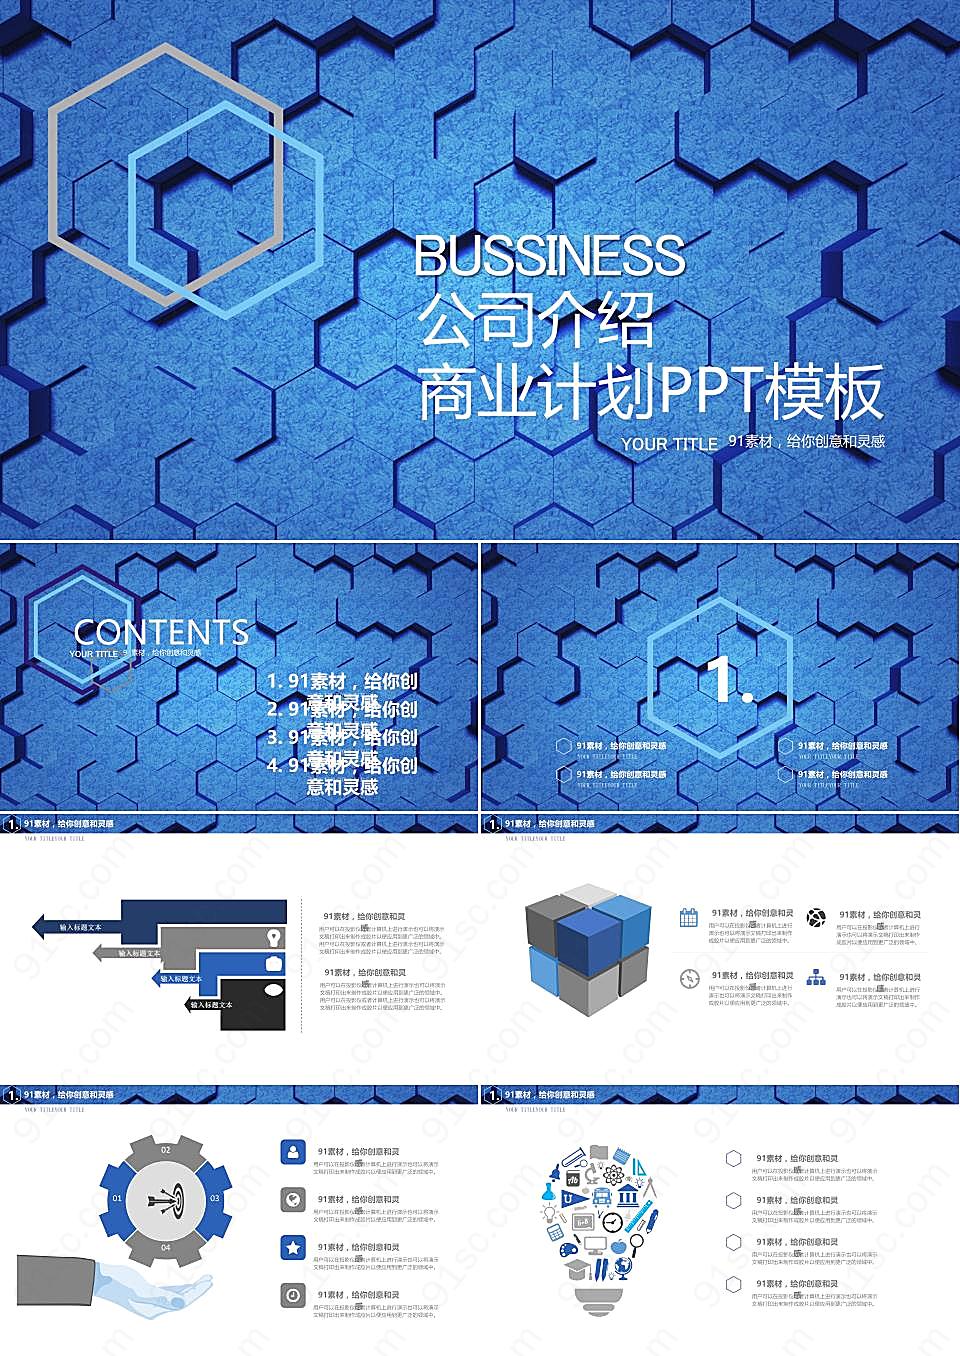 蓝色公司介绍商业计划ppt模板